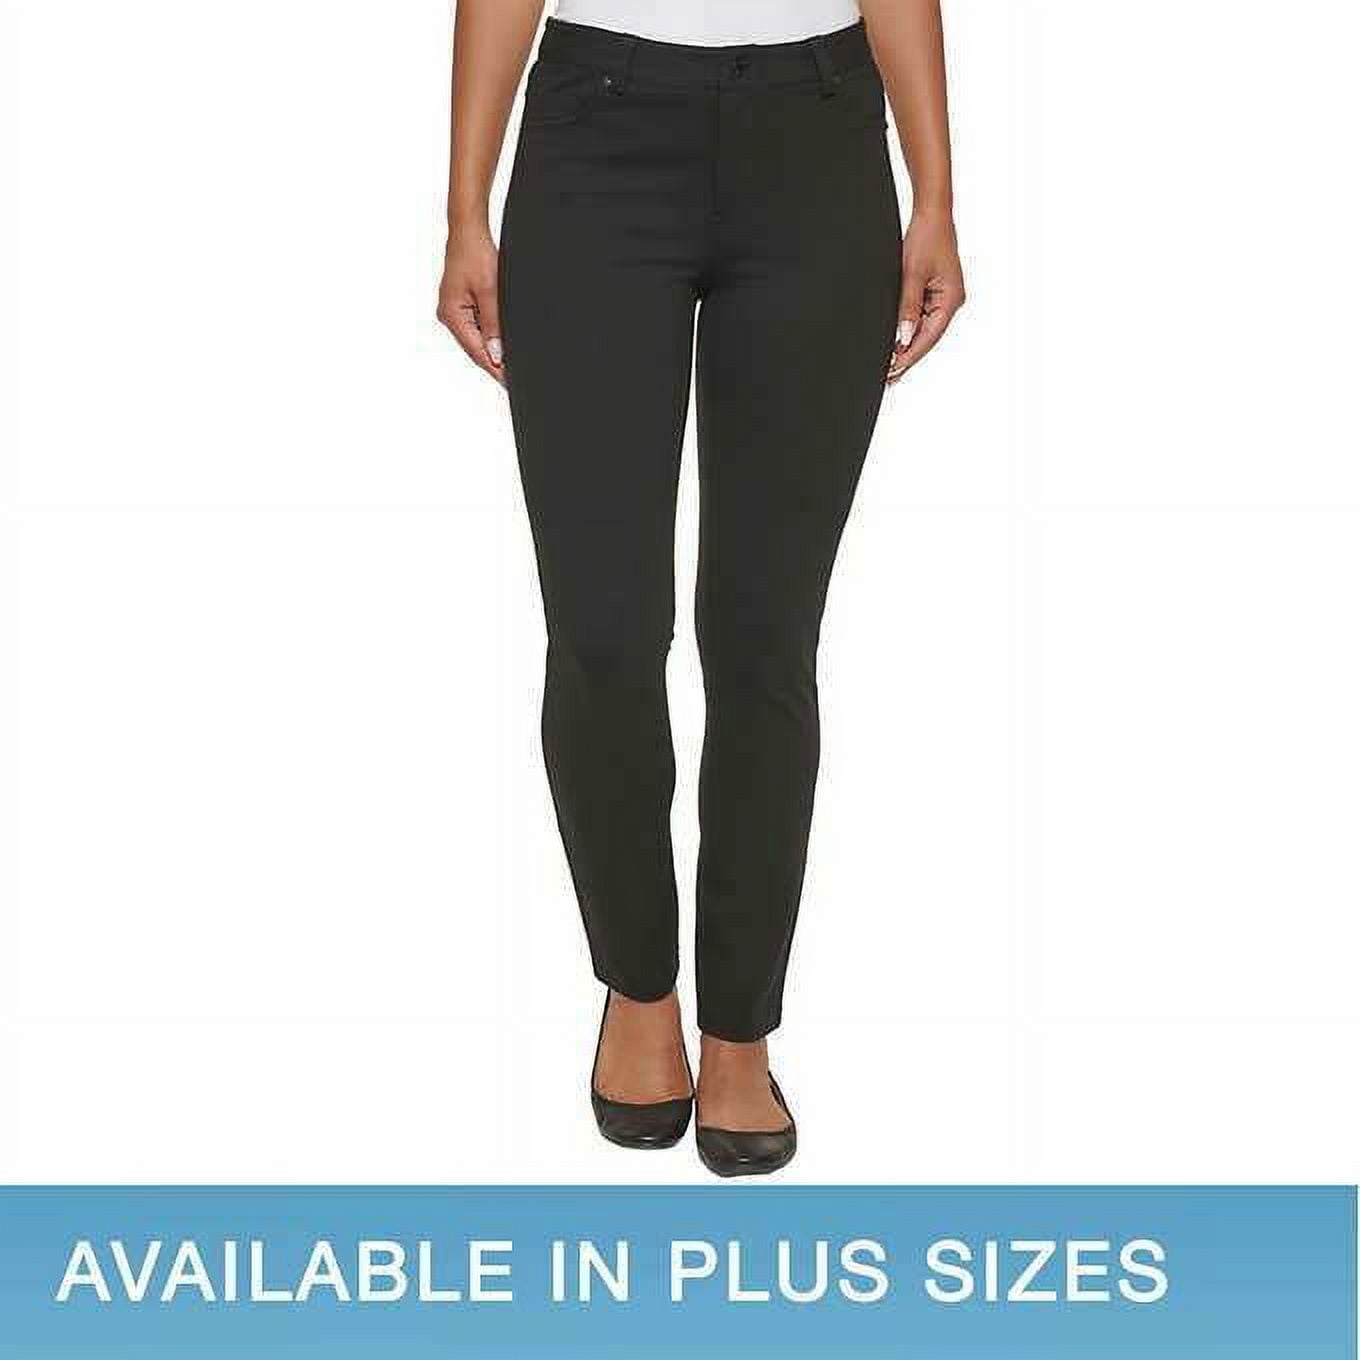 DKNY Women's Pants Sz L Ladies' Slim Leg Ponte Pant Black 